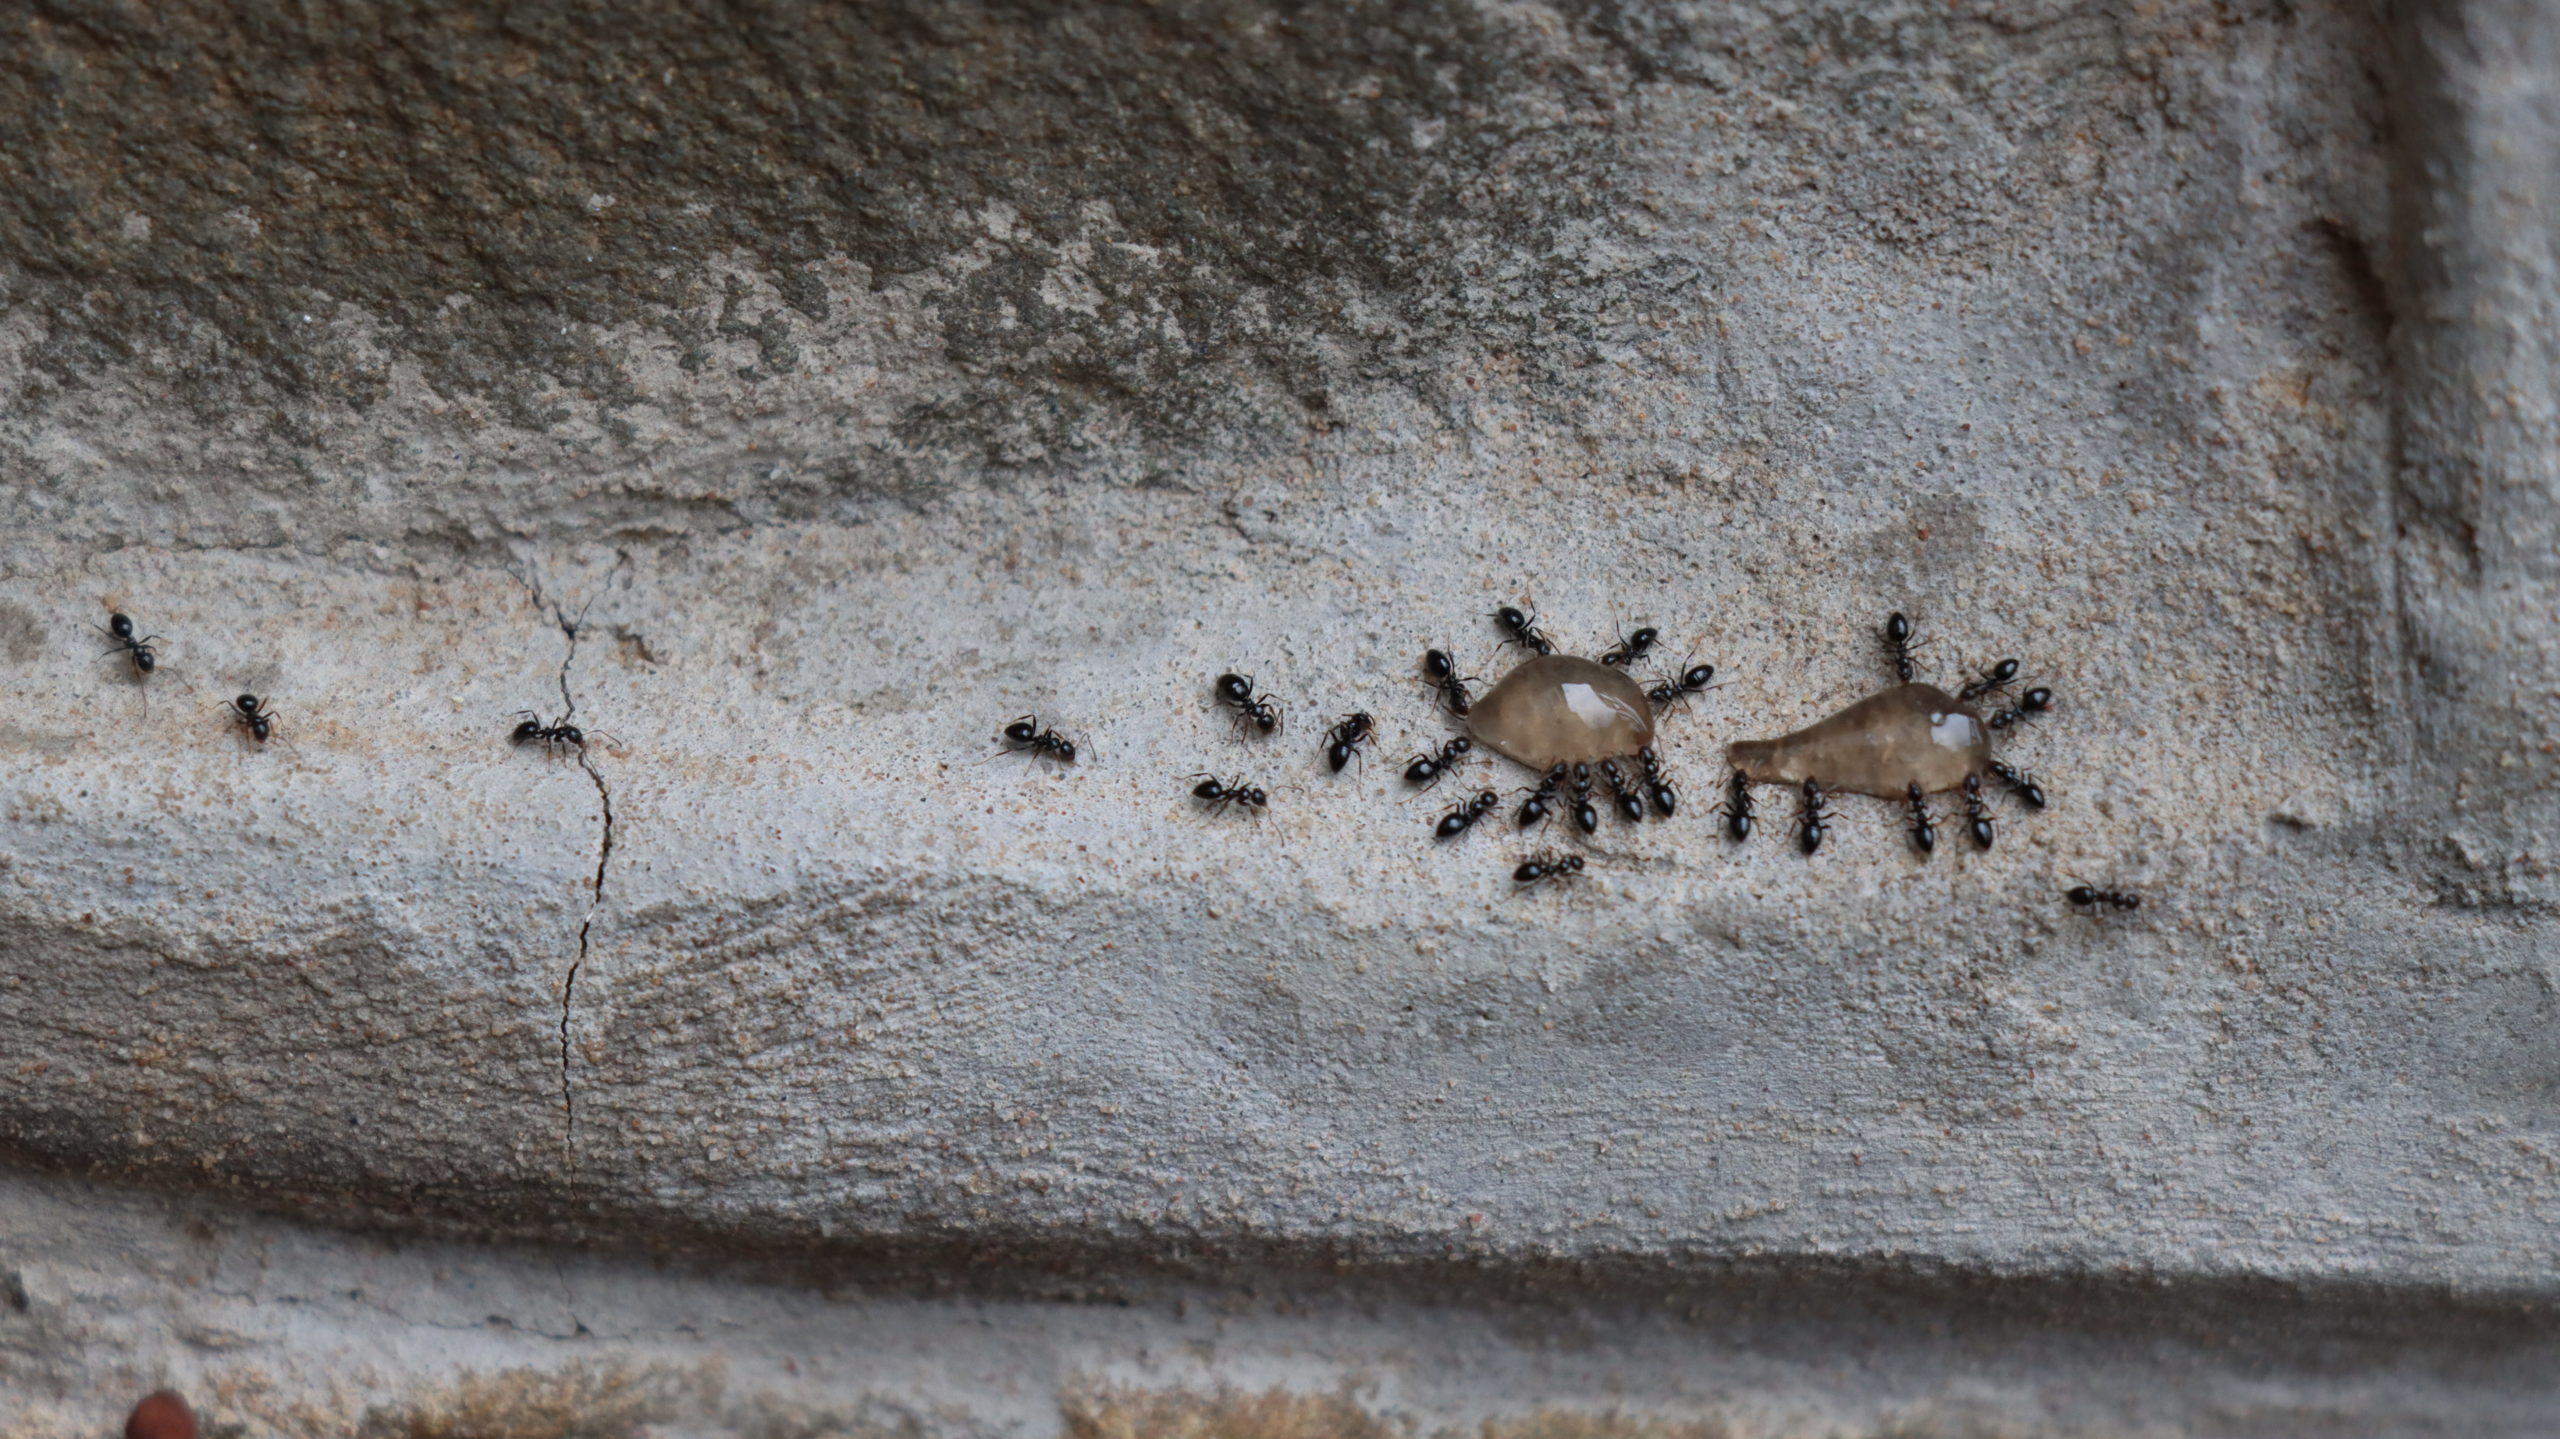 Ants eating gel baits